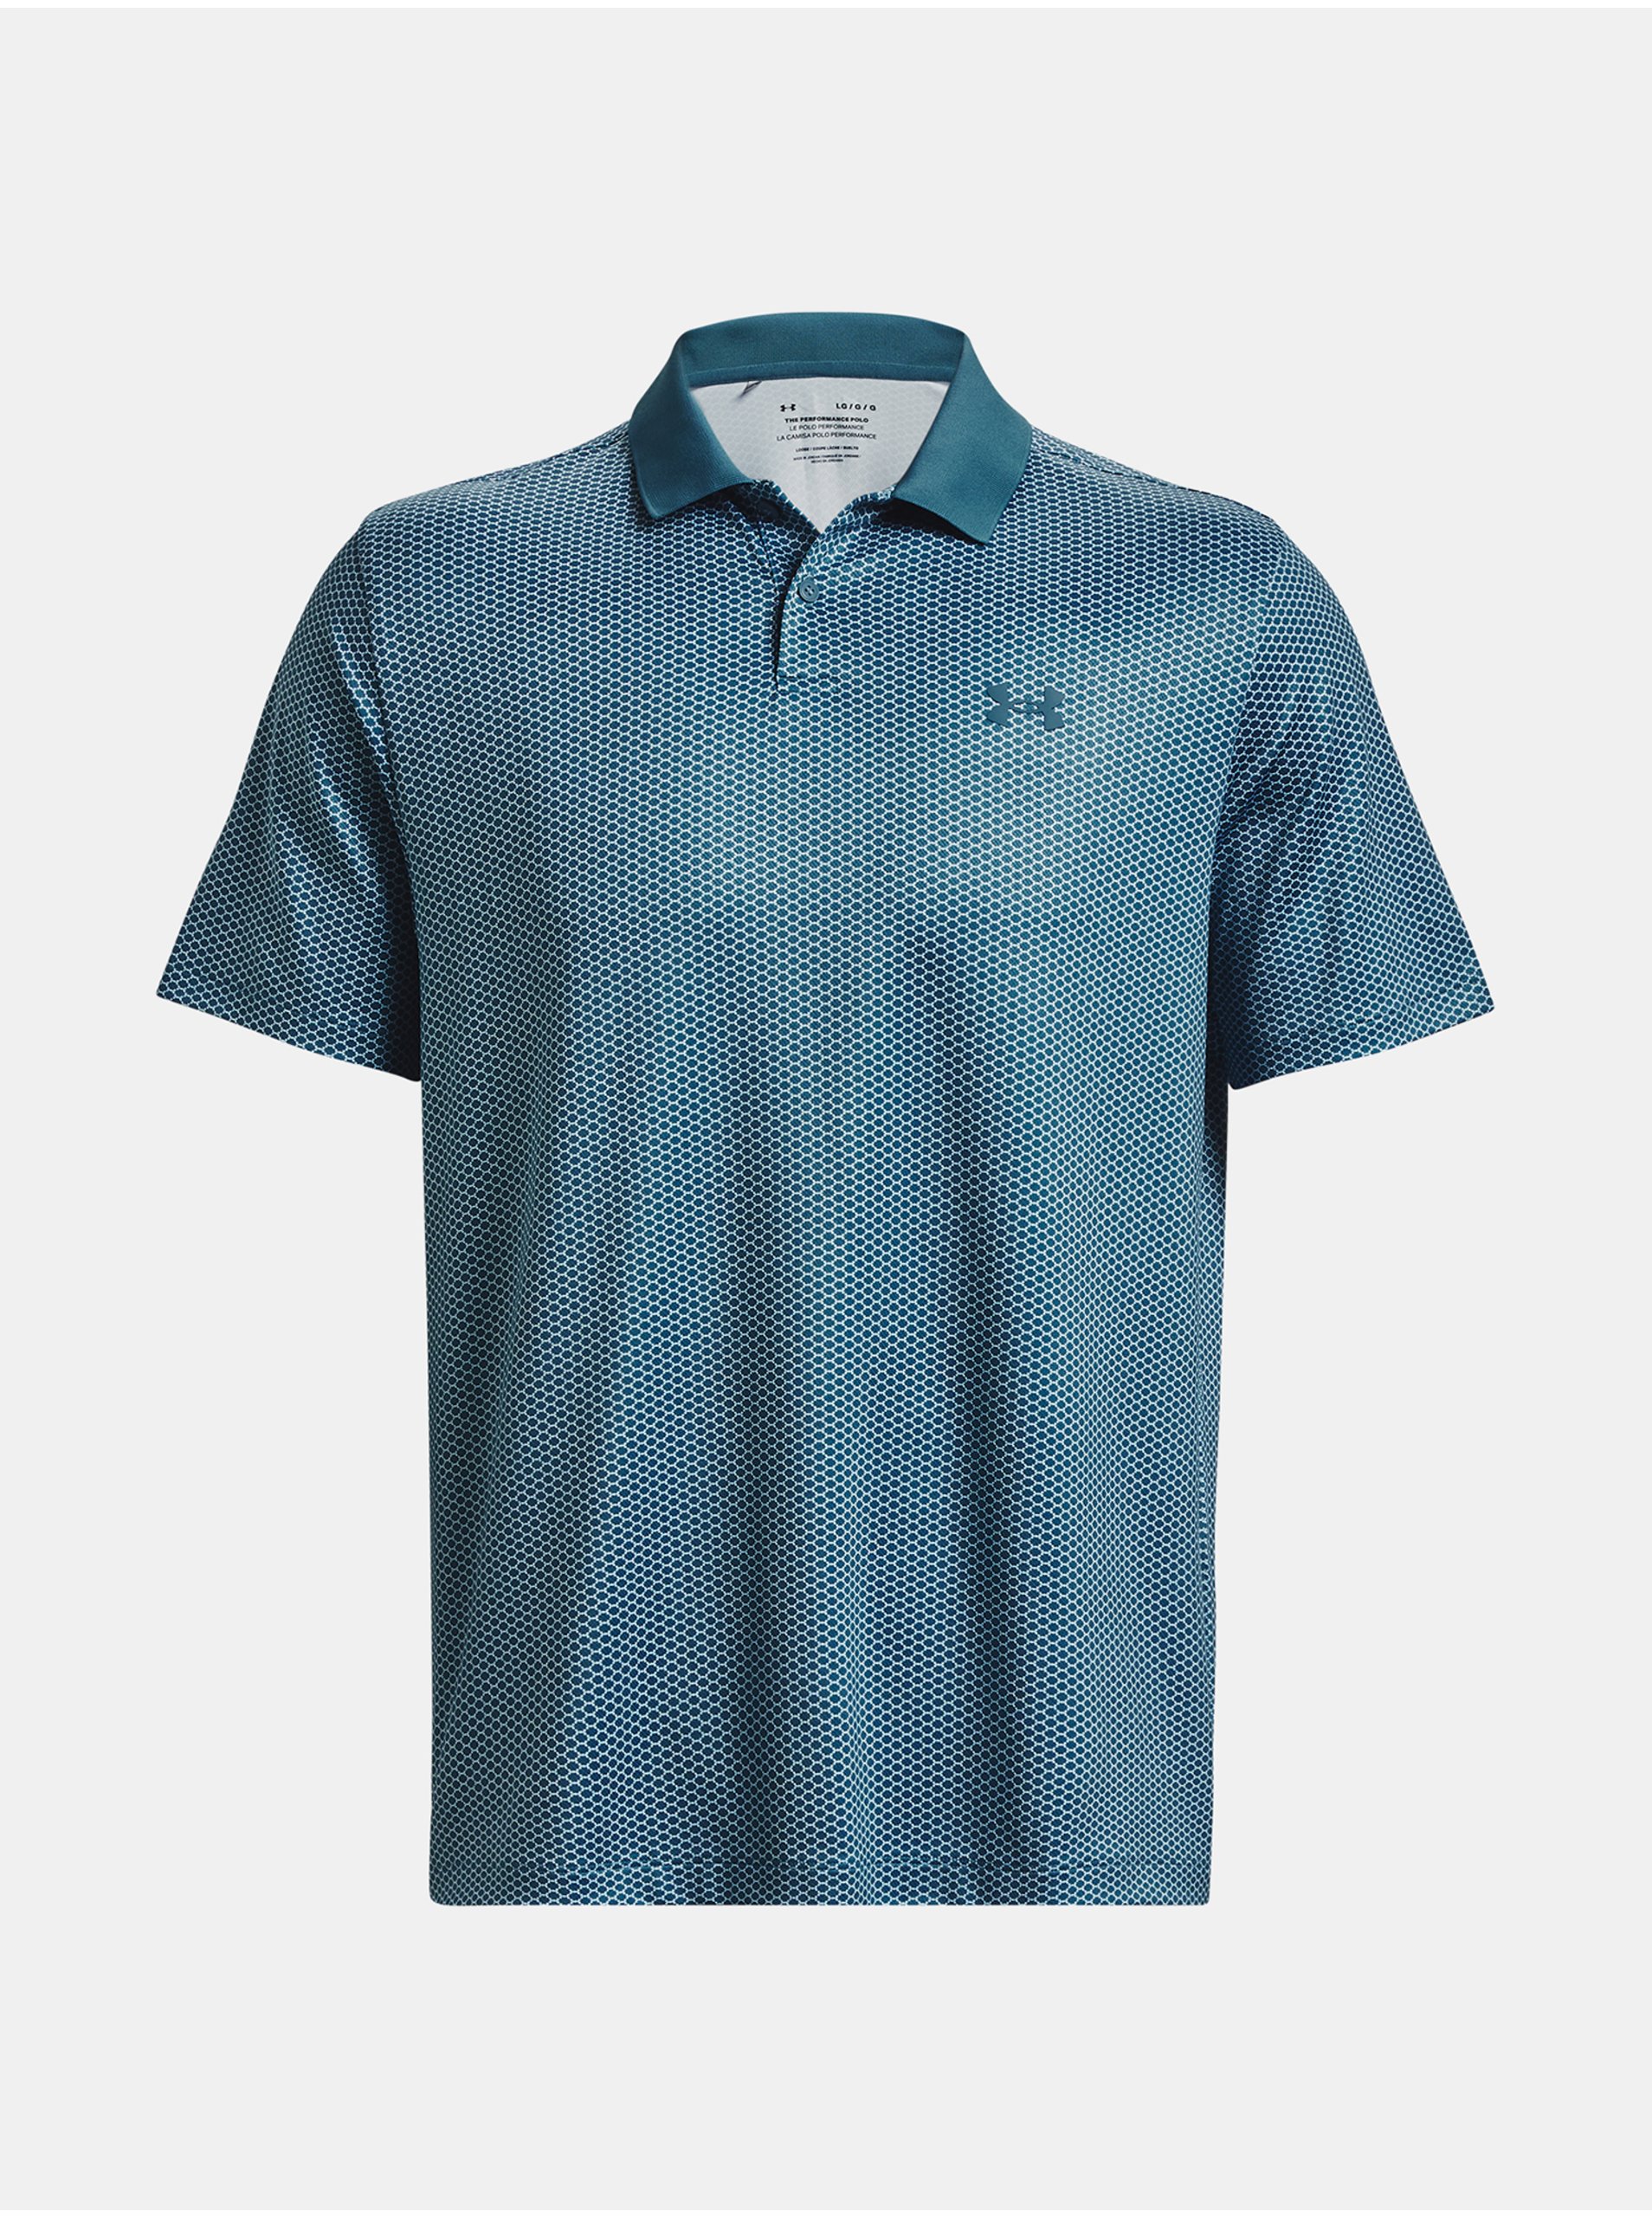 Lacno Modré vzorované športové polo tričko Under Armour UA Perf 3.0 Printed Polo